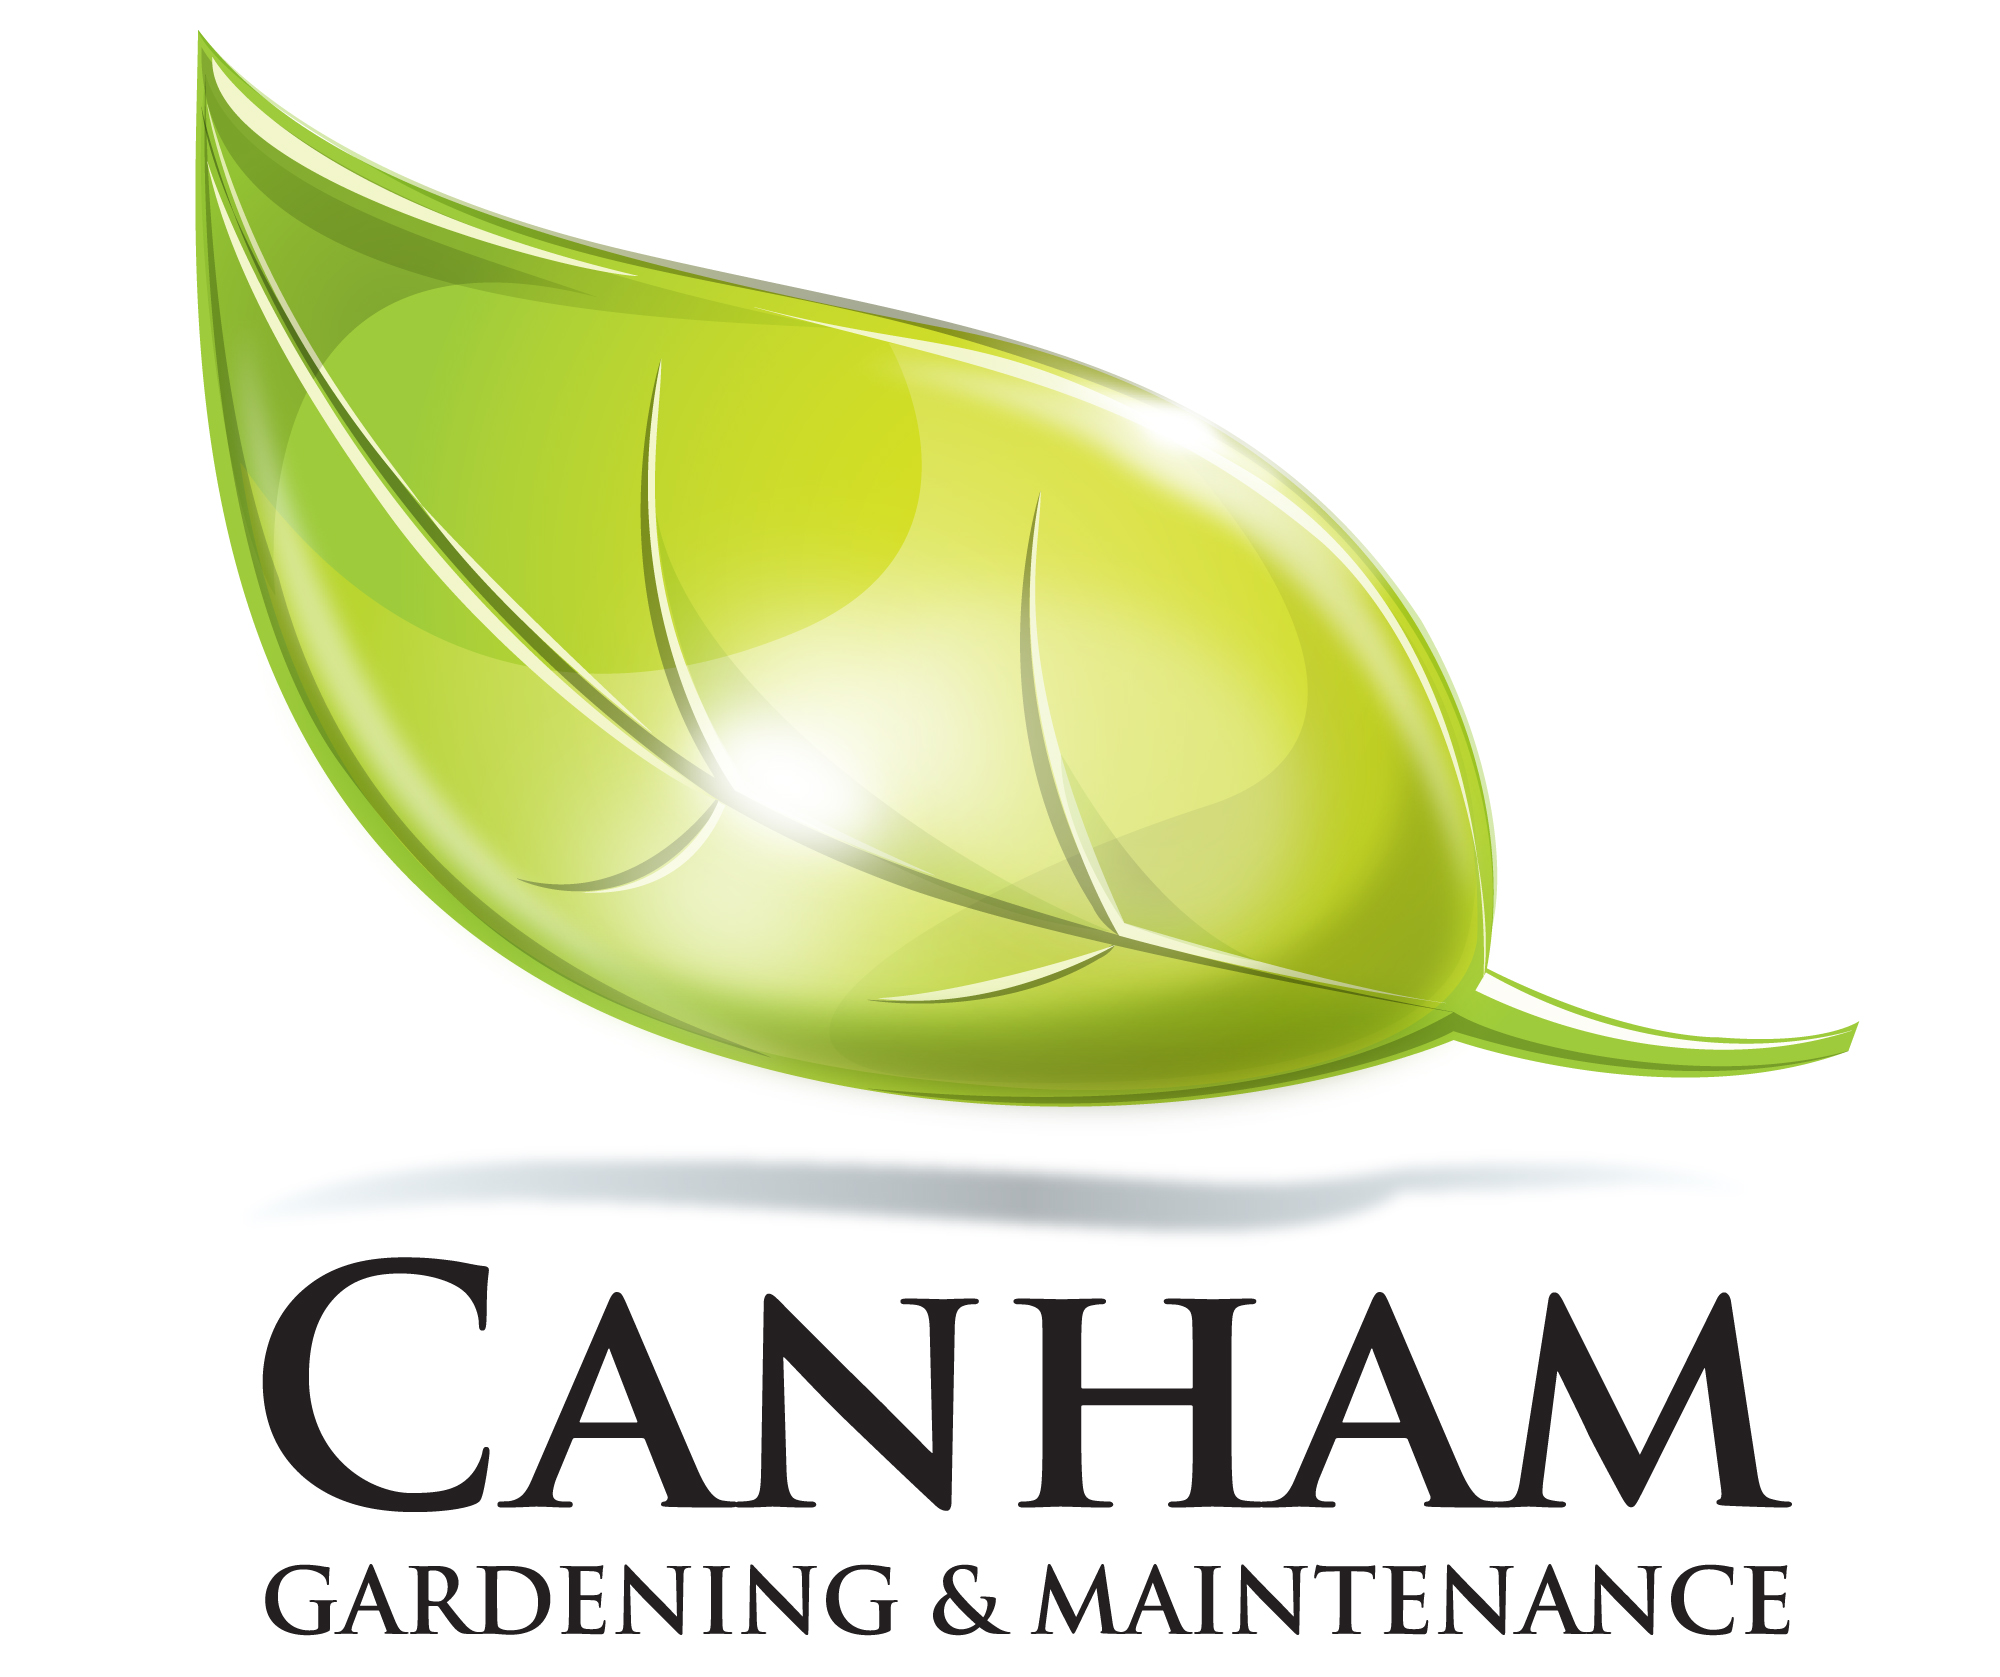 Canham Gardening & Maintenance